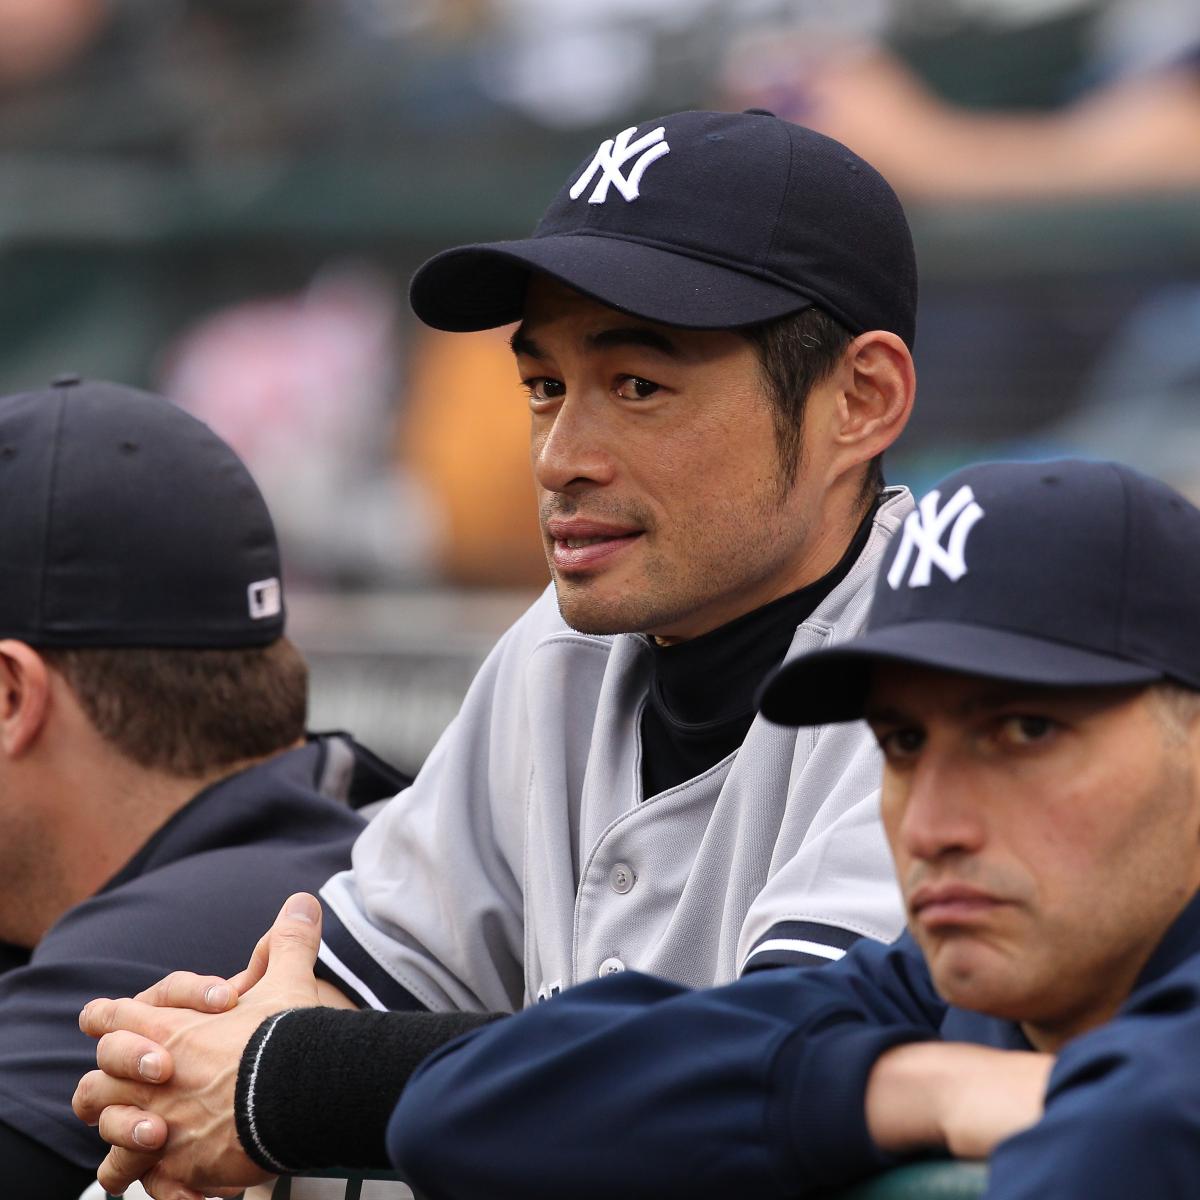 Ichiro Suzuki: How Japanese fans react to Yankees uniform 